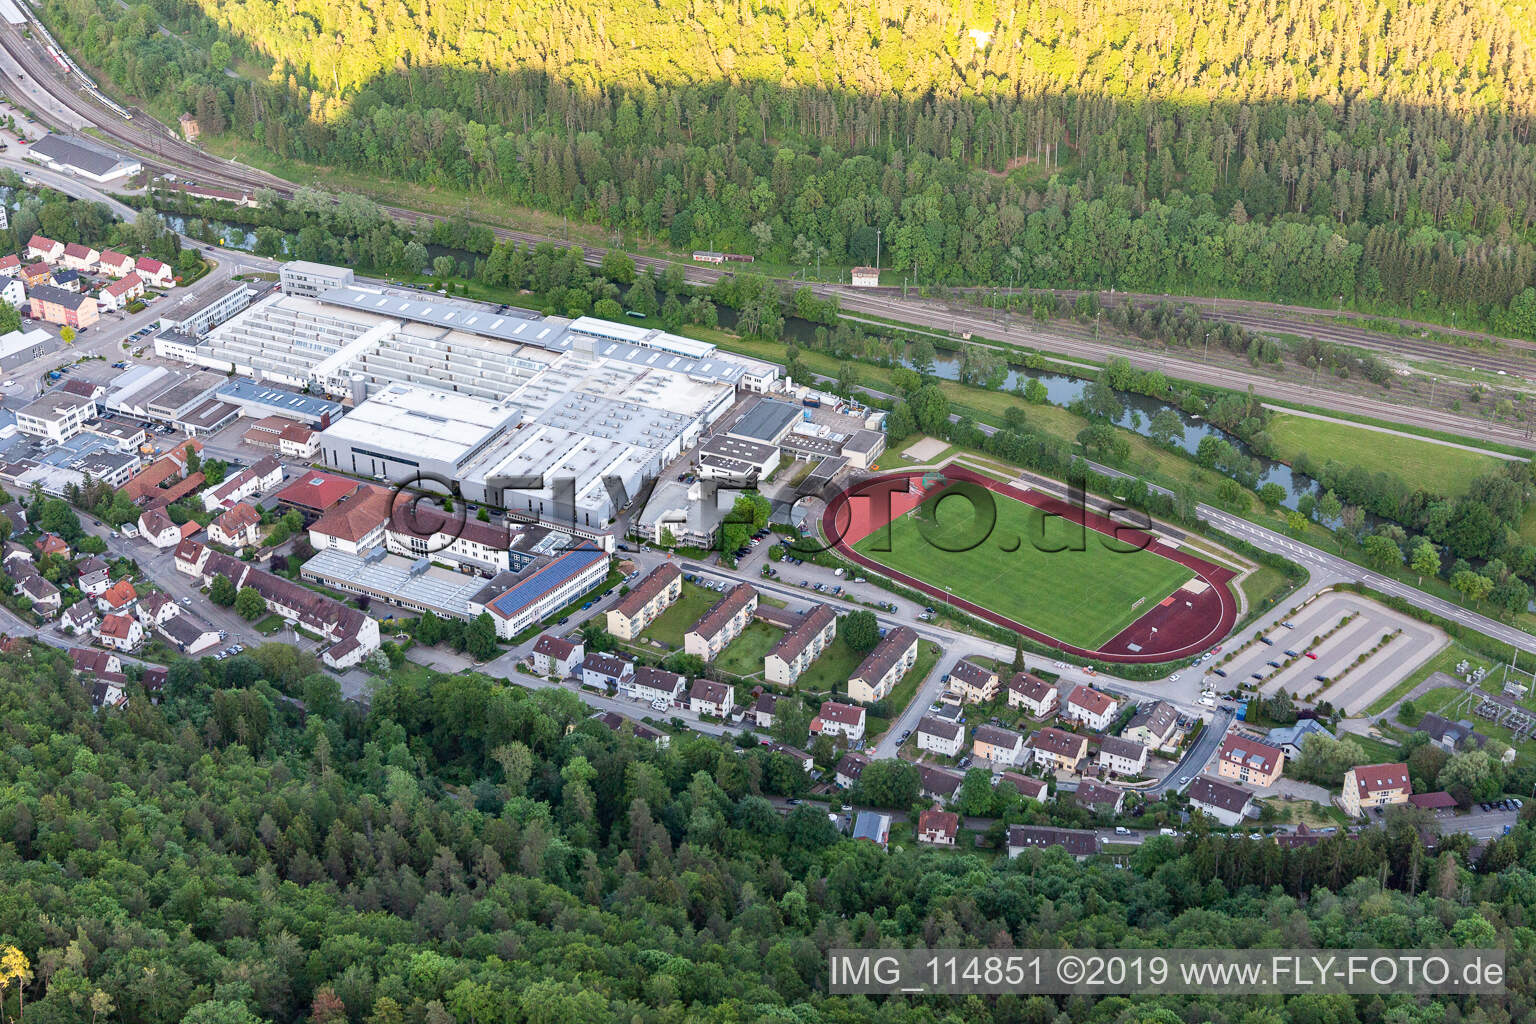 FC Horb stadium in Horb am Neckar in the state Baden-Wuerttemberg, Germany